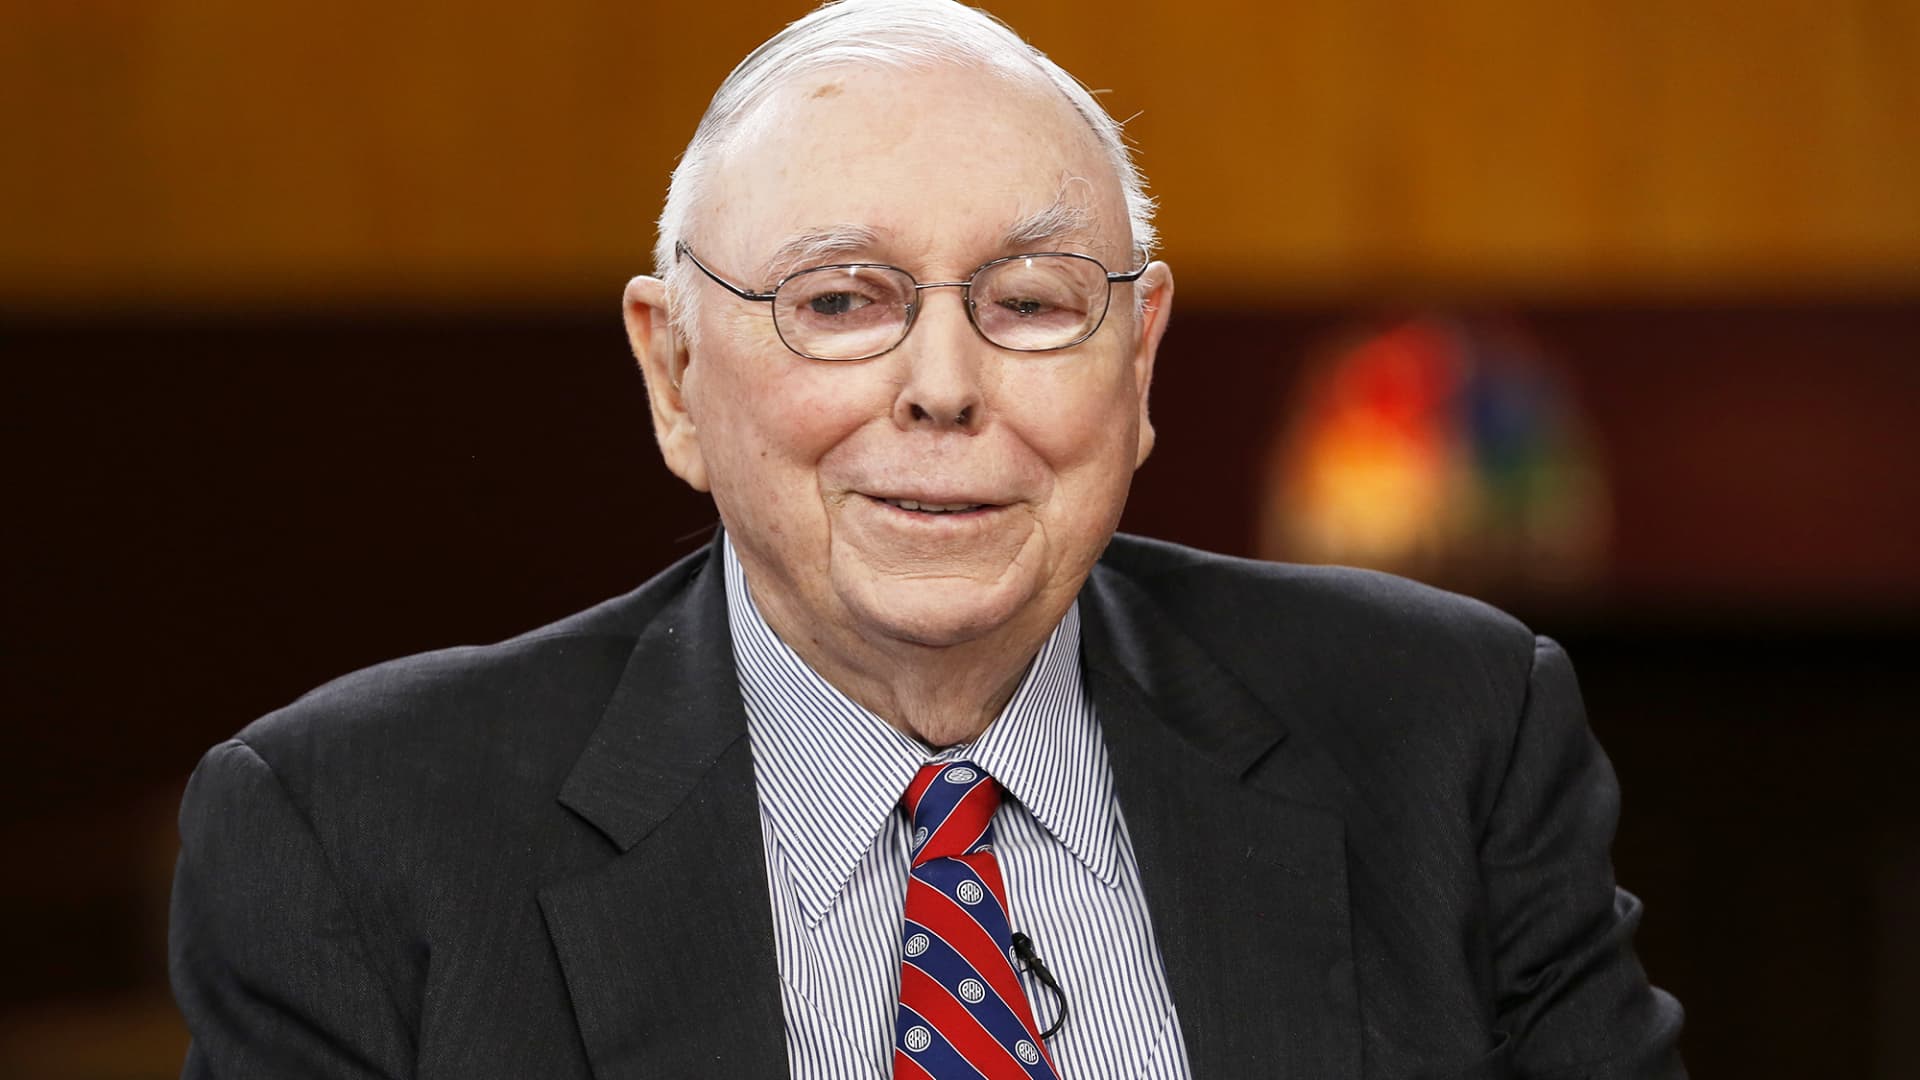 Charlie Munger, investing sage and Warren Buffett’s confidant, dies